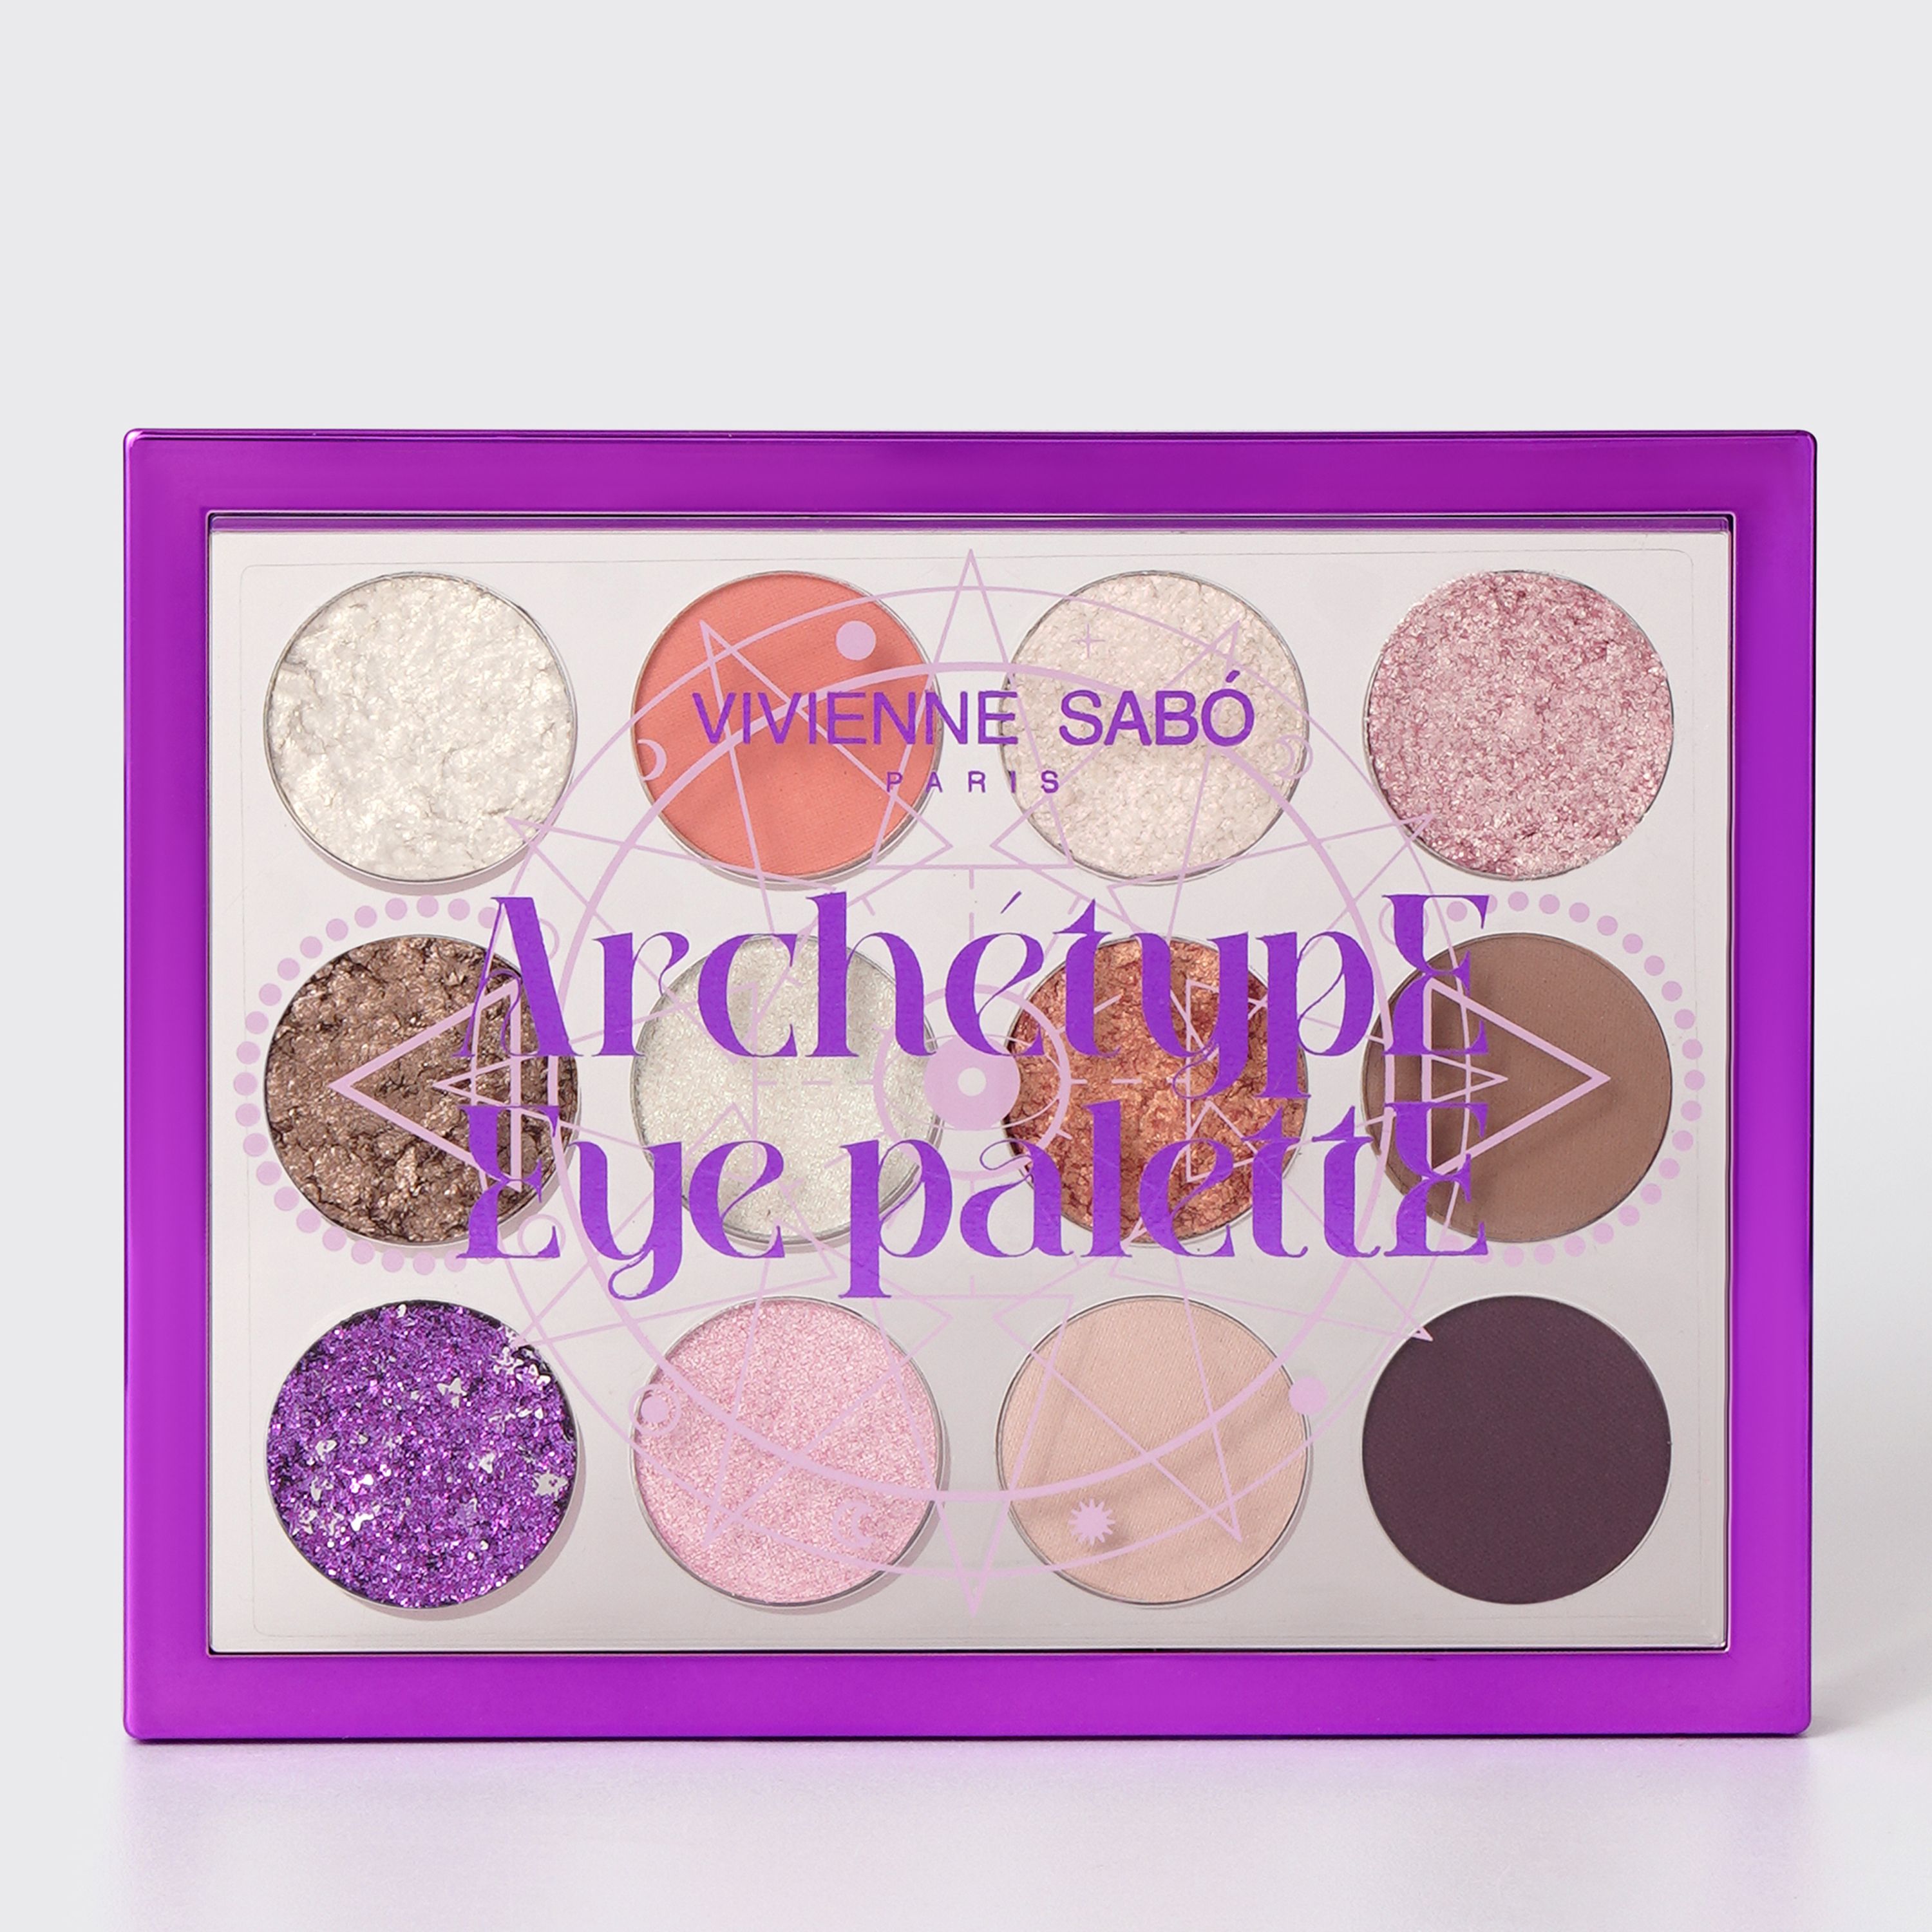 Vivienne Sabo -Eyeshadow Palette "Archetype eye palette" 